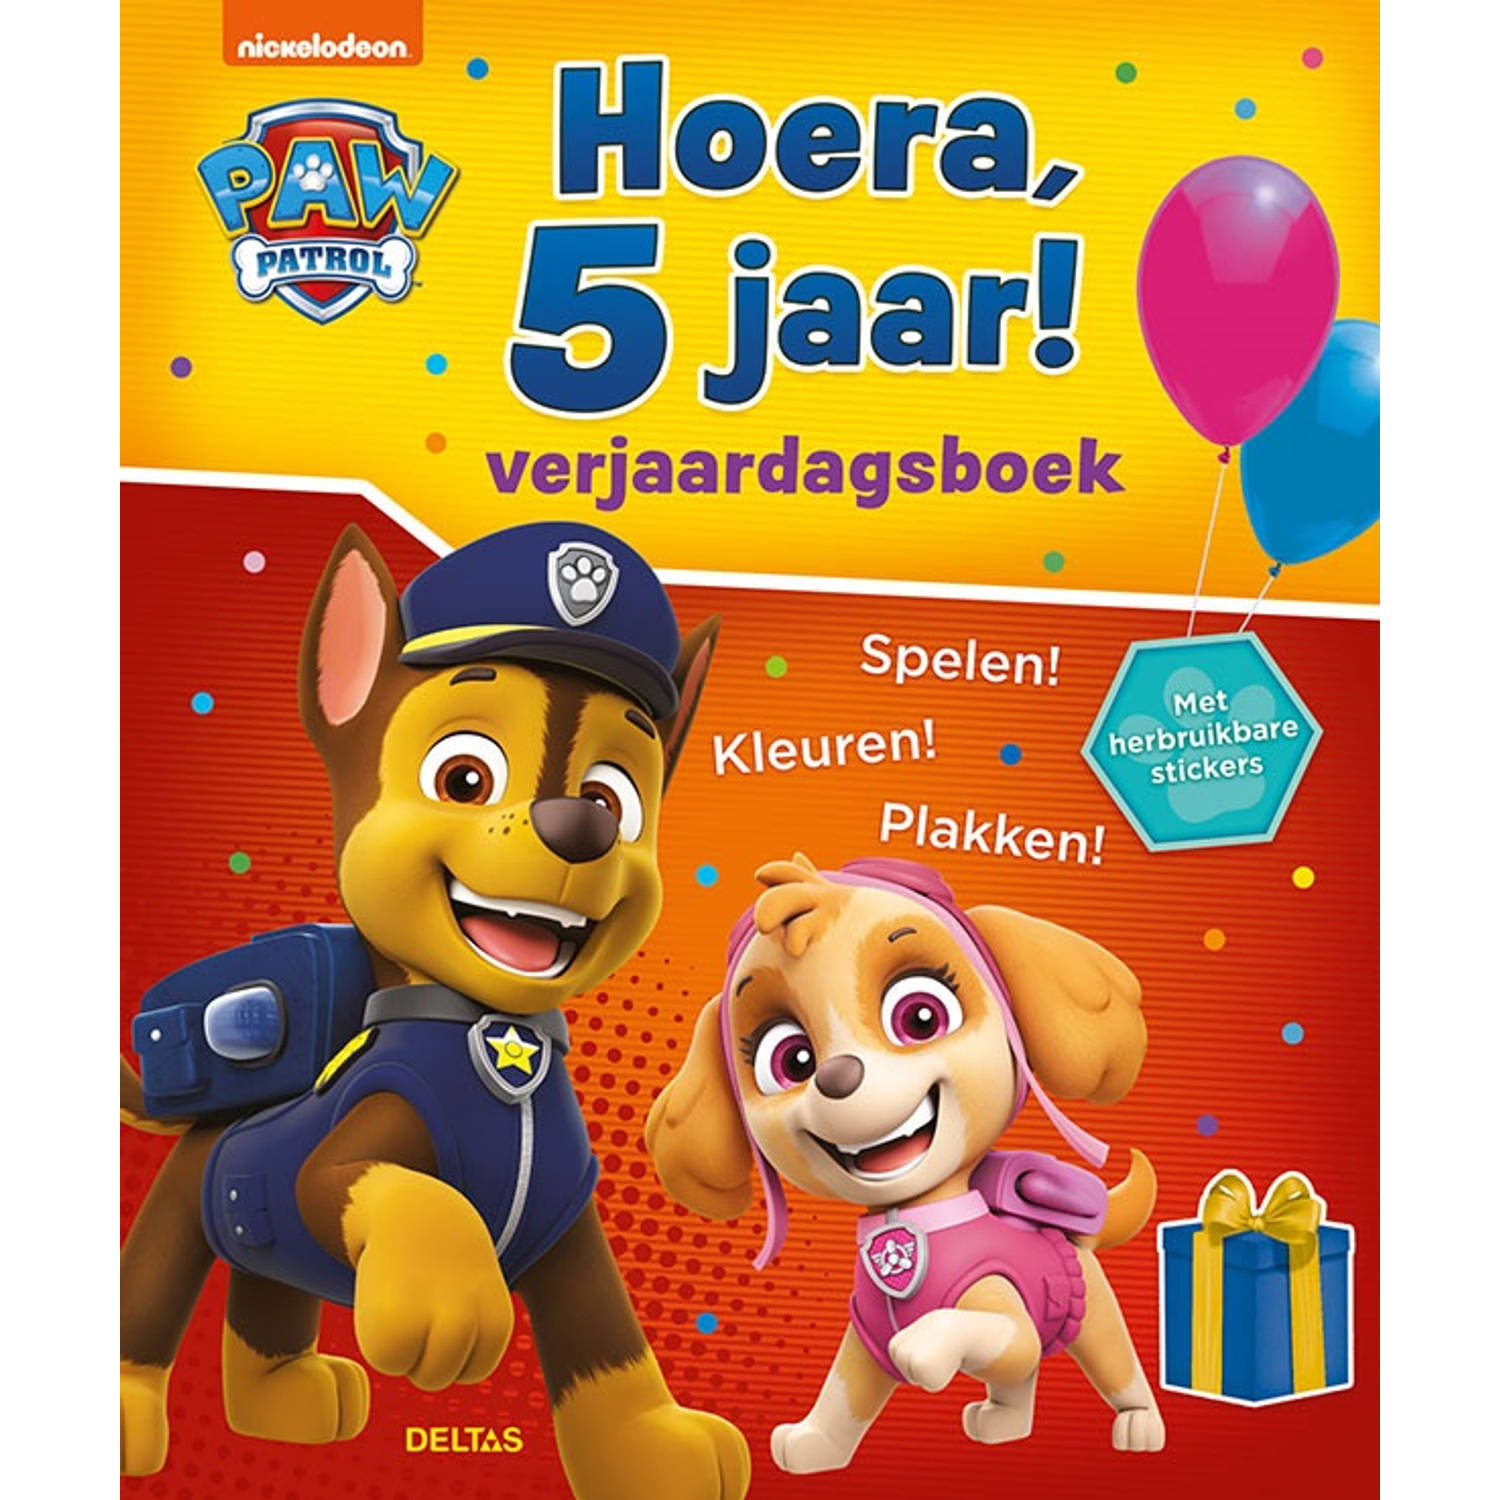 Nickelodeon Verjaardagsboek Paw Patrol Hoera, 5 Jaar!